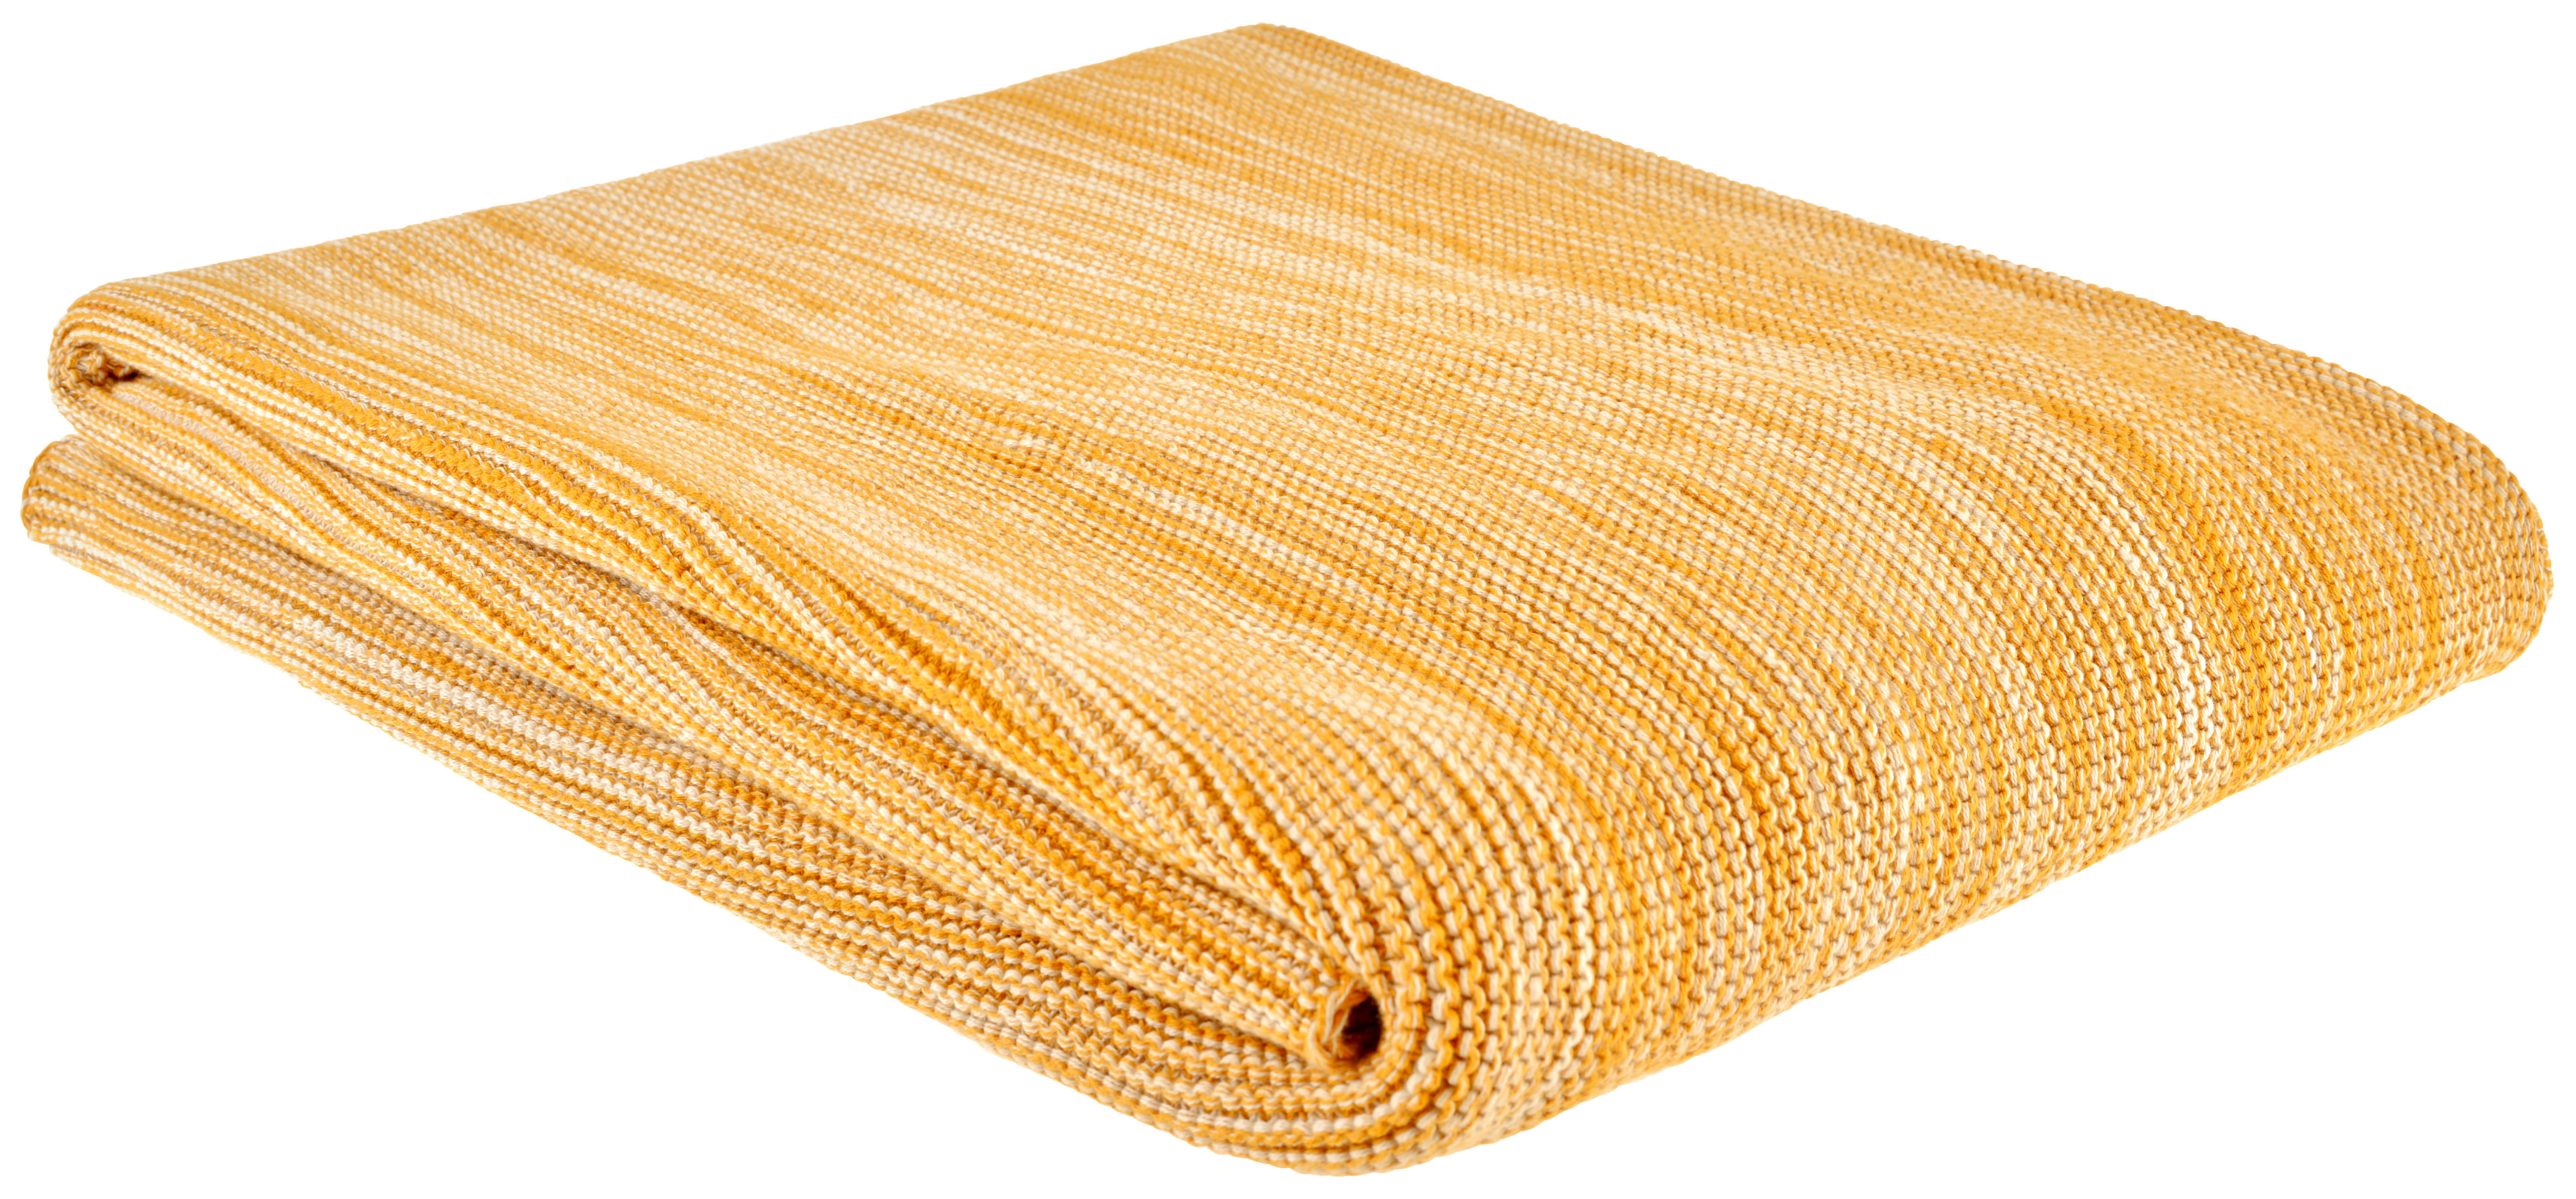 PREKRIVAČ 130/170 cm  - žuta, Konvencionalno, tekstil (130/170cm) - Bio:Vio